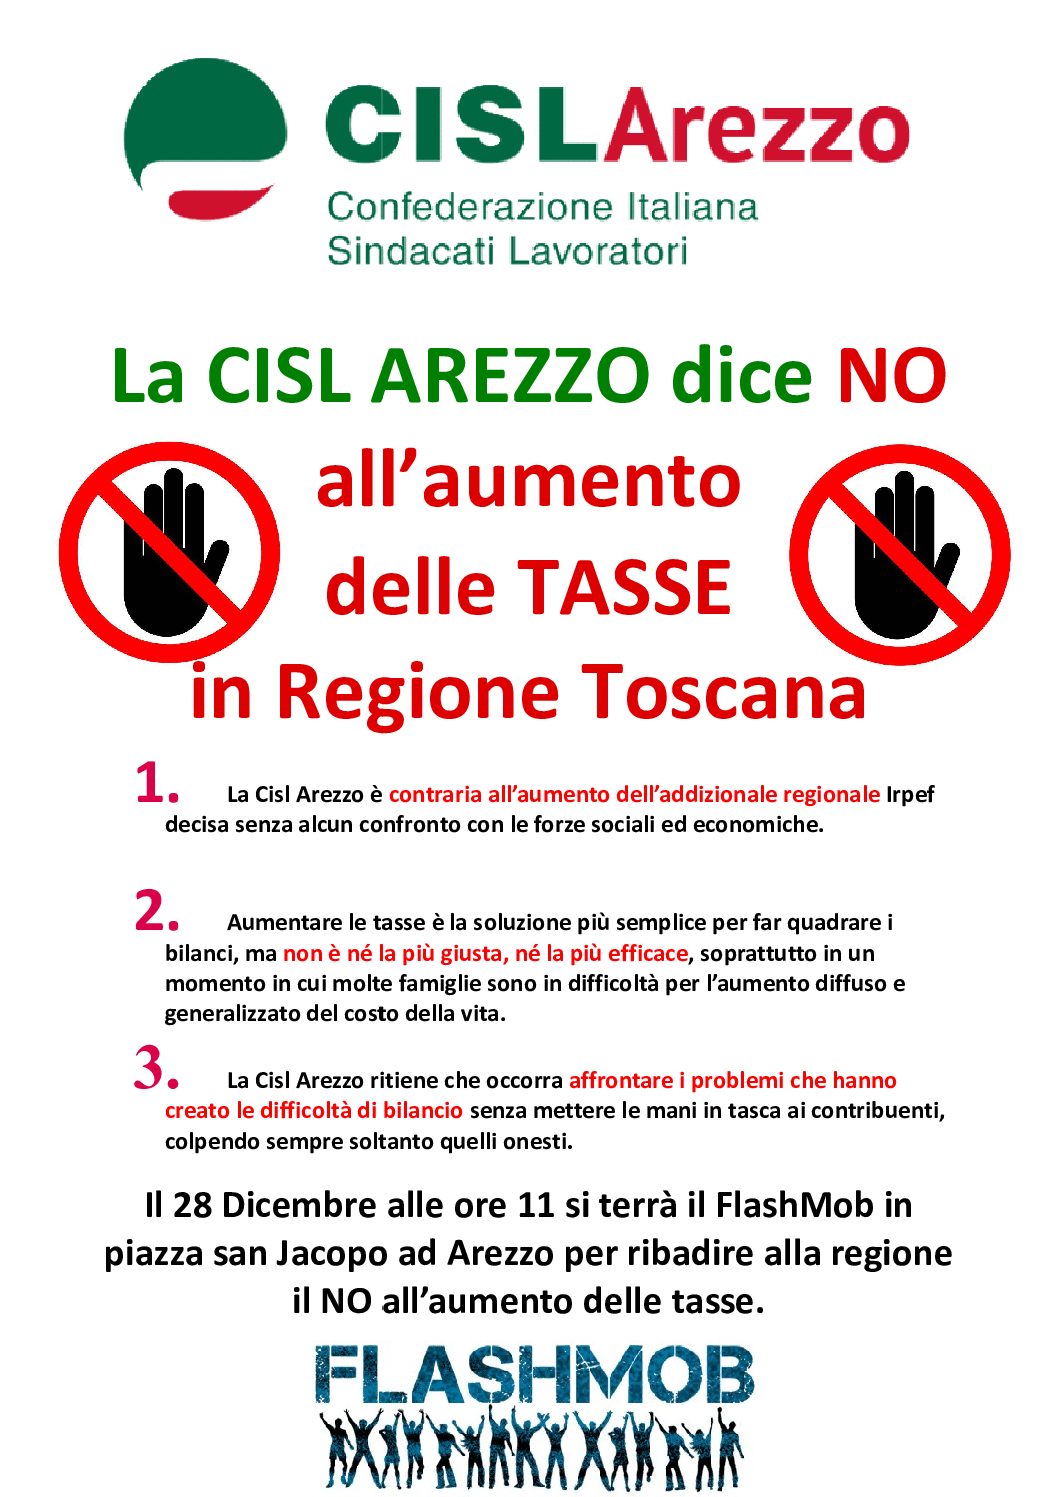 Manifestazione contro l’aumento delle tasse in Regione Toscana